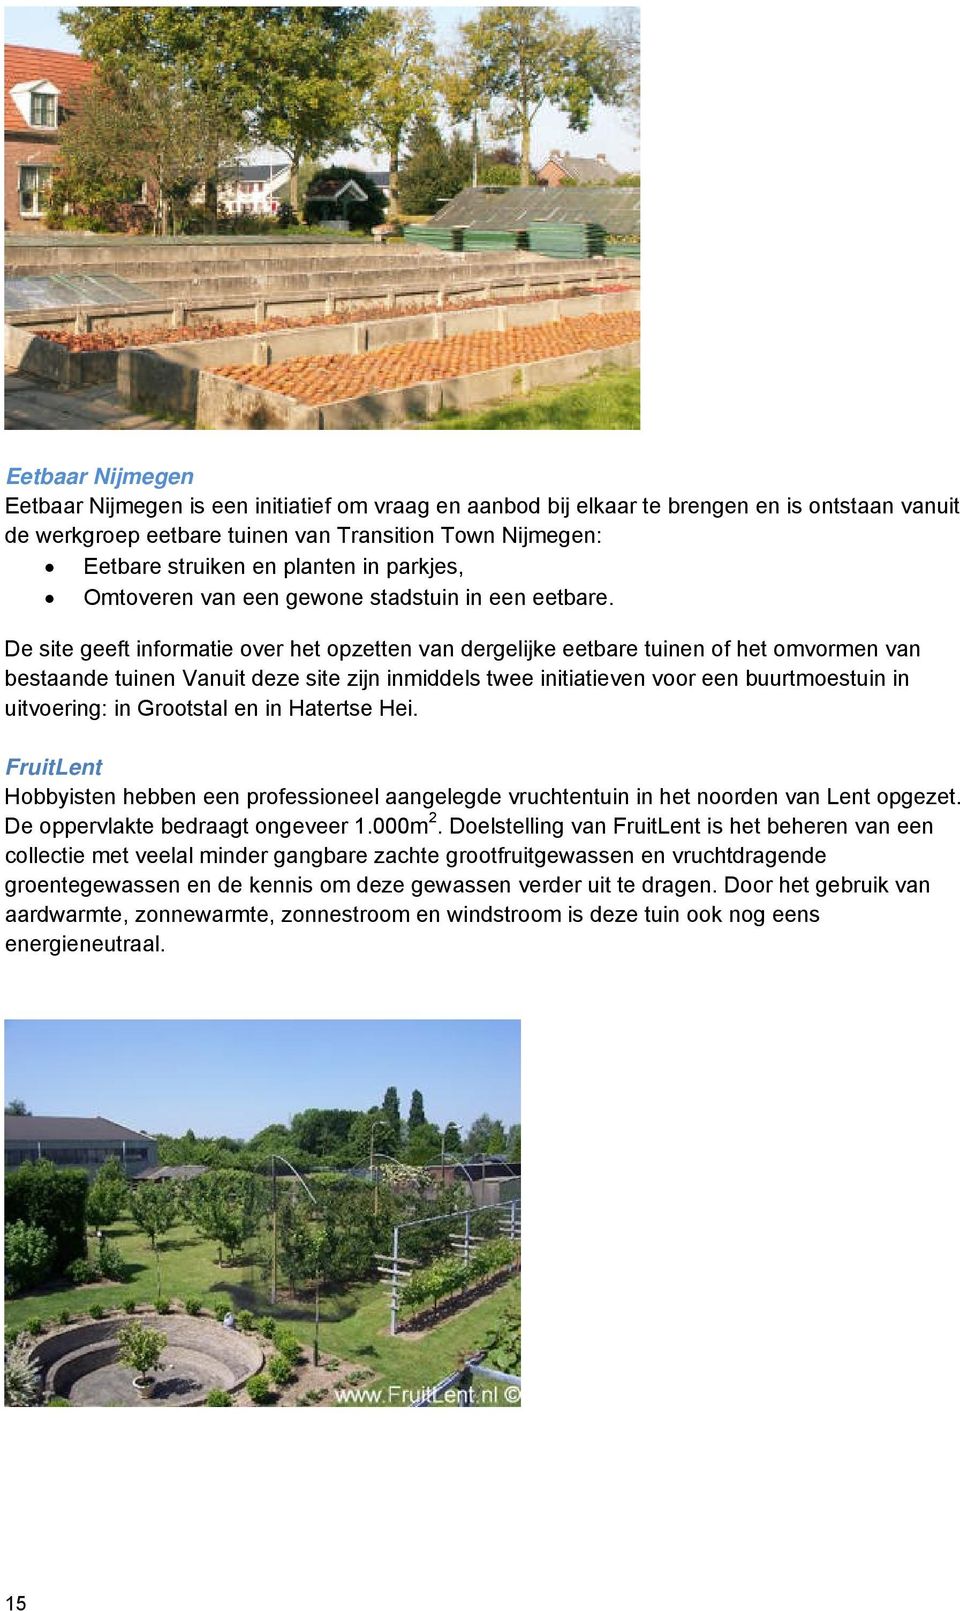 De site geeft informatie over het opzetten van dergelijke eetbare tuinen of het omvormen van bestaande tuinen Vanuit deze site zijn inmiddels twee initiatieven voor een buurtmoestuin in uitvoering: